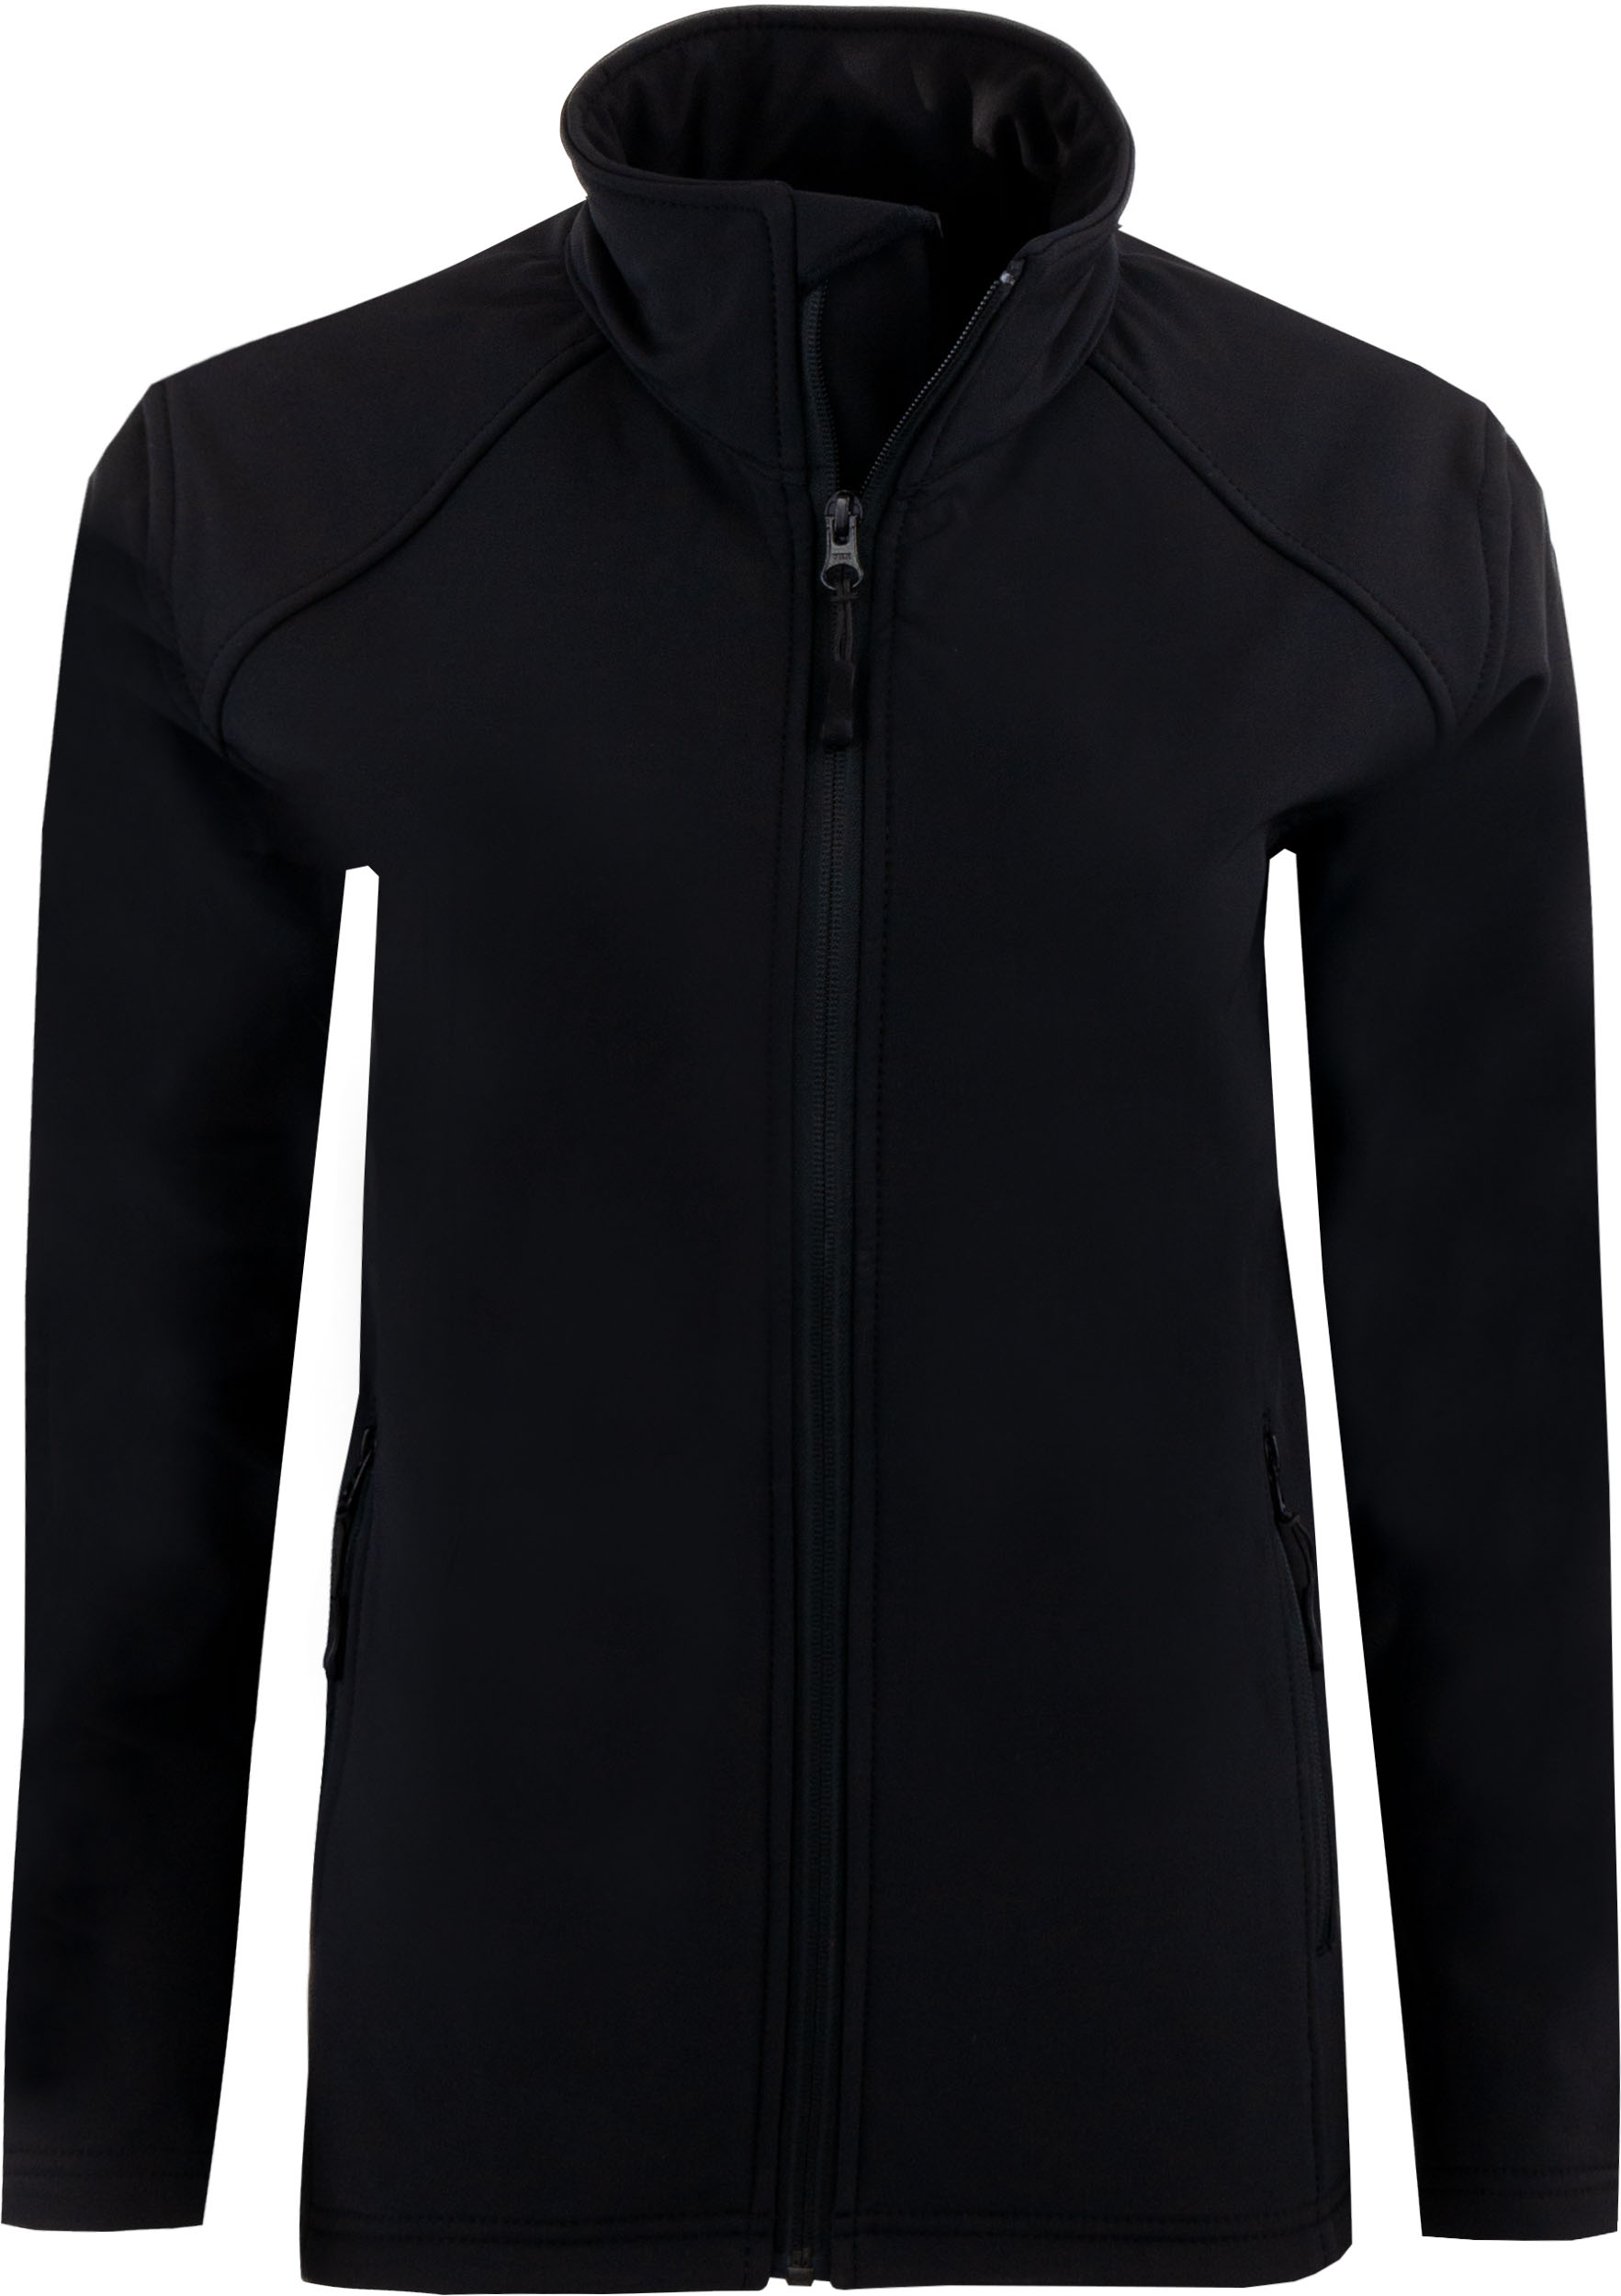 Dámská softshellová bunda Uniwear Black|S